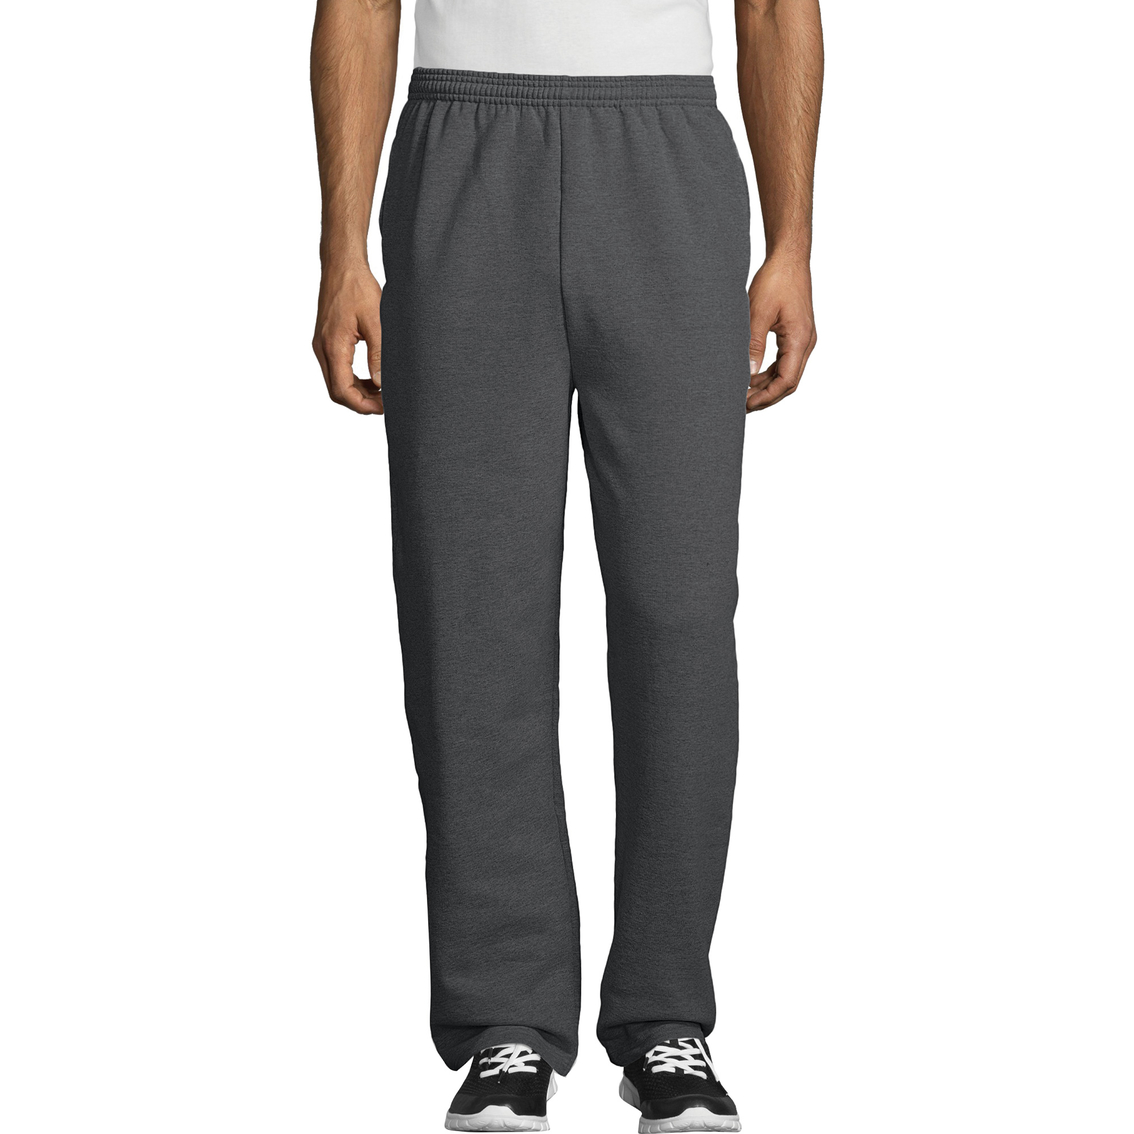 Hanes Ecosmart Fleece Sweatpants With Pocket | Pants | Clothing ...